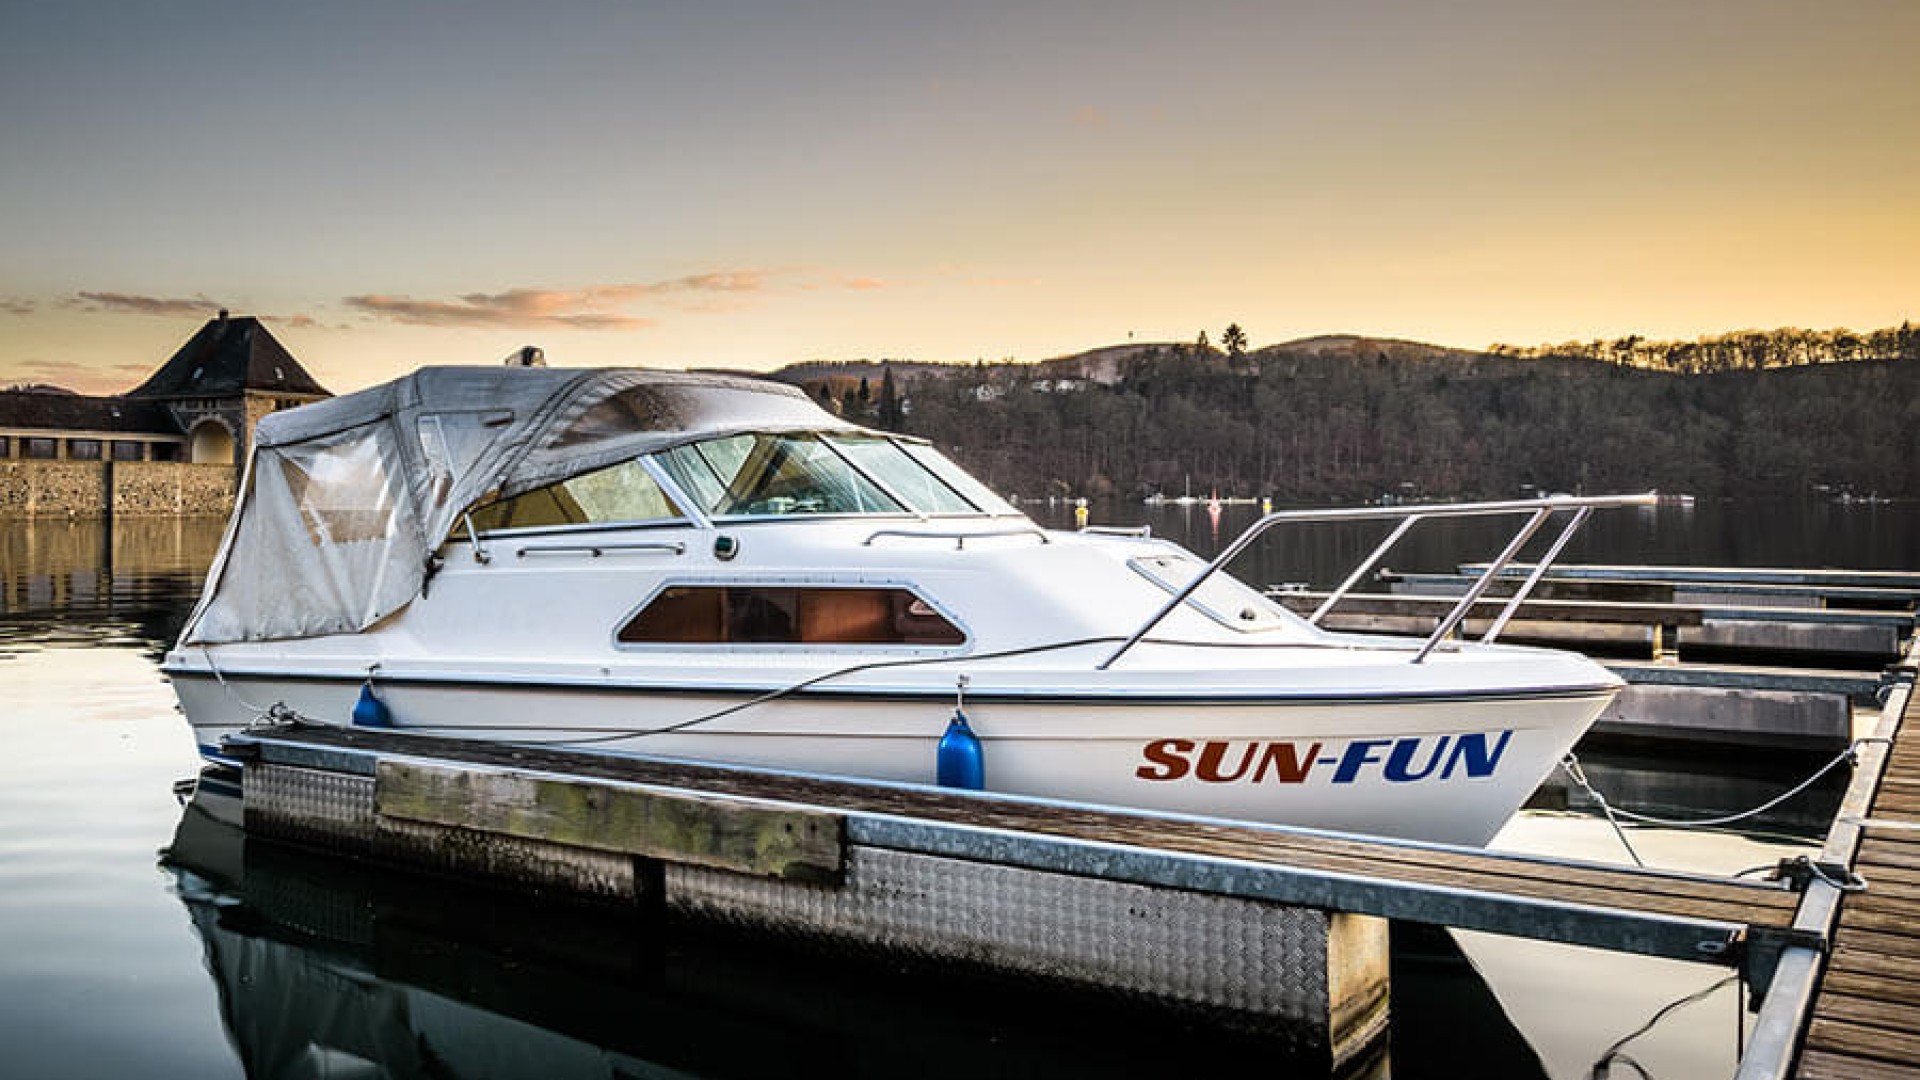 Mit Sun-Fun am Edersee eine Yacht oder ein Boot fahren, und den Edersee hautnah erleben!